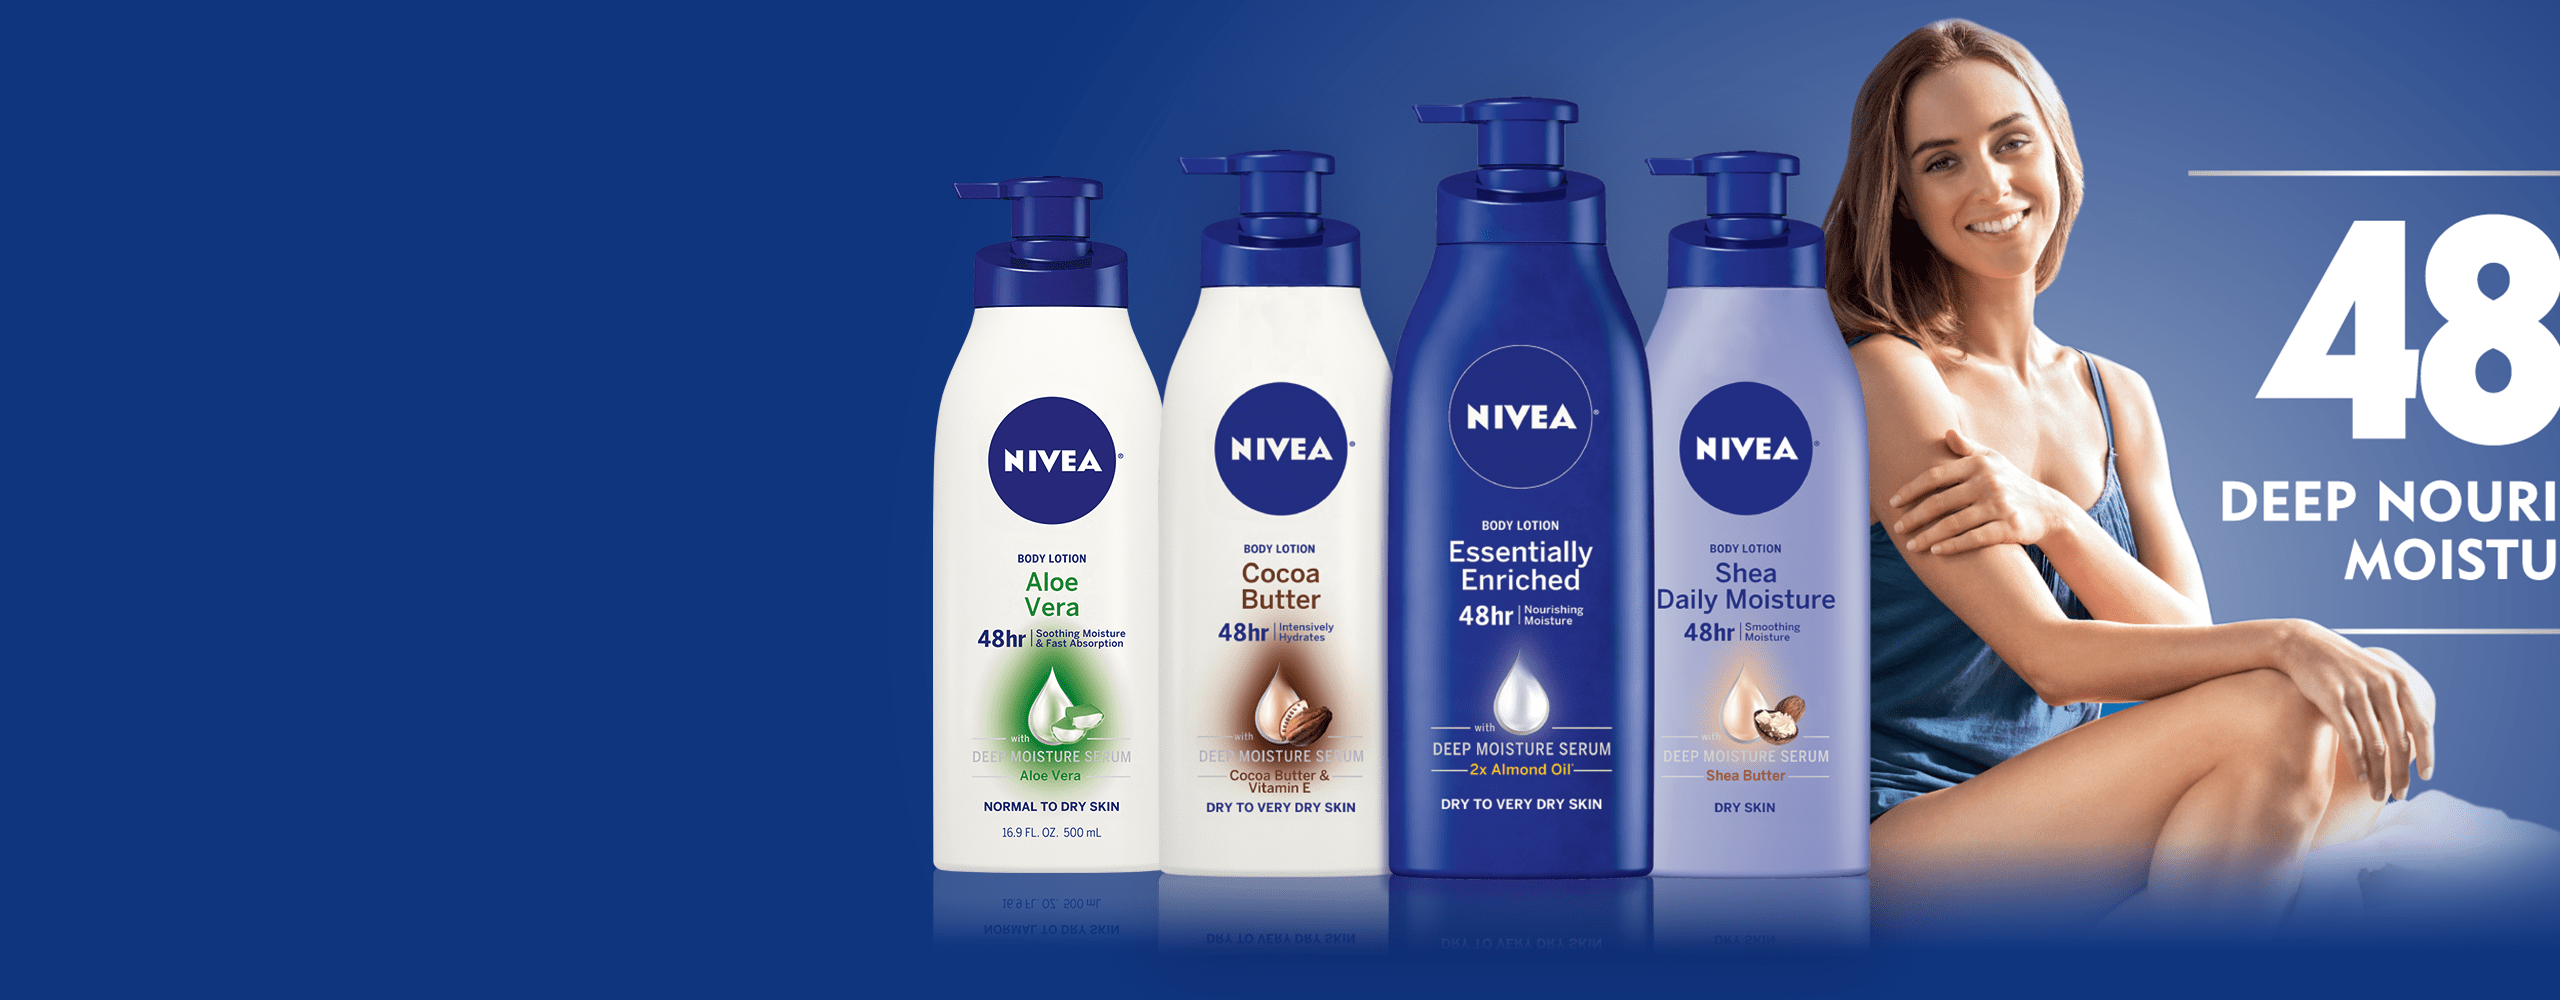 NIVEA Essentials Products